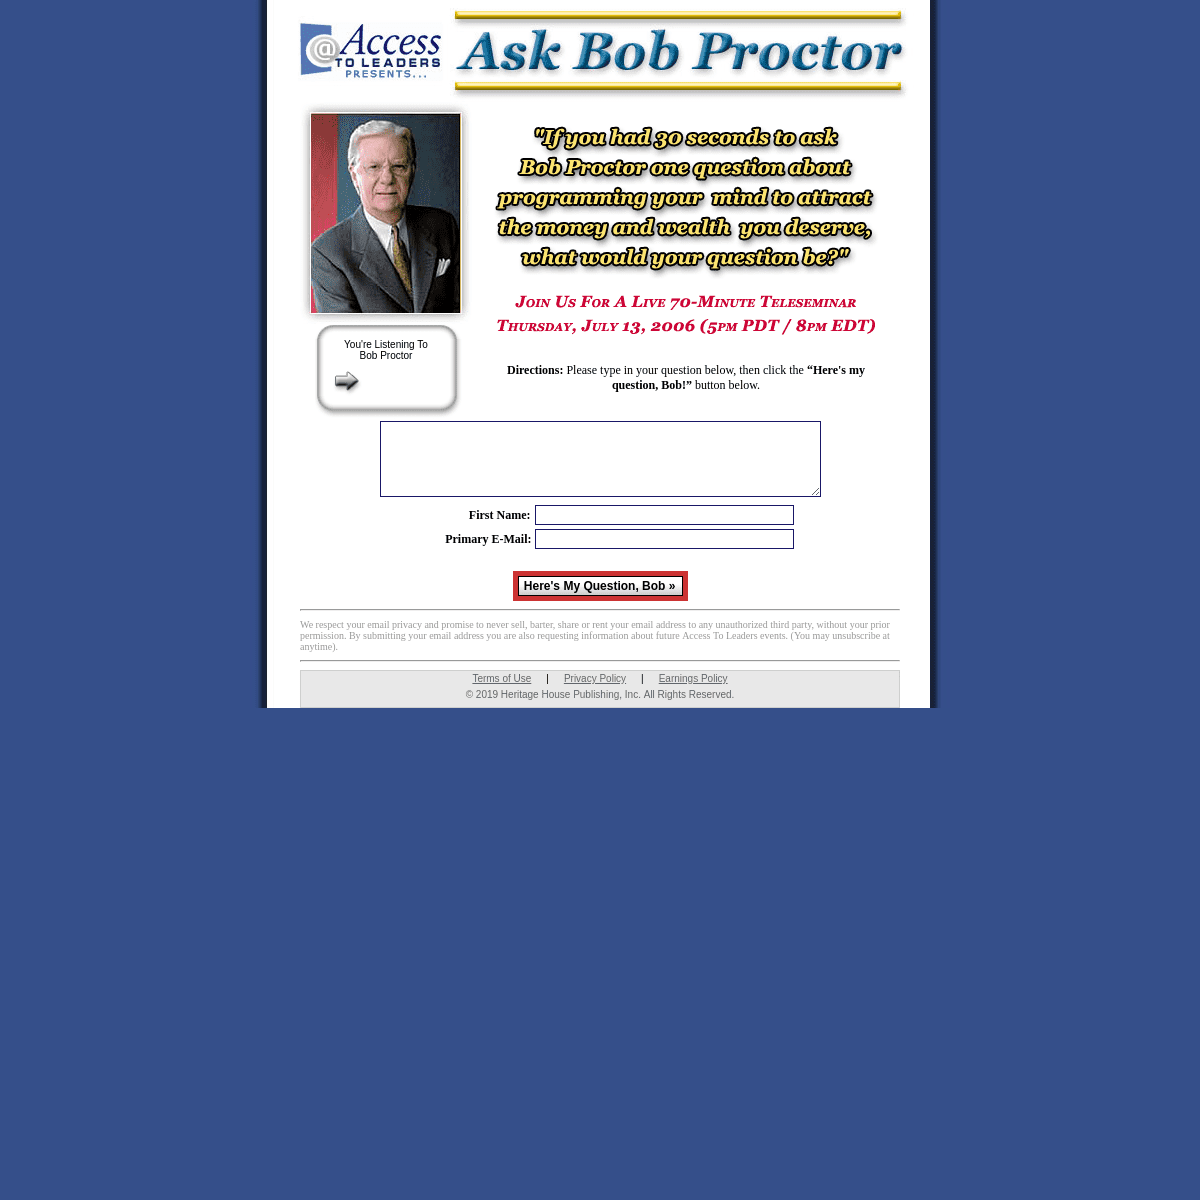 A complete backup of askbobproctor.com